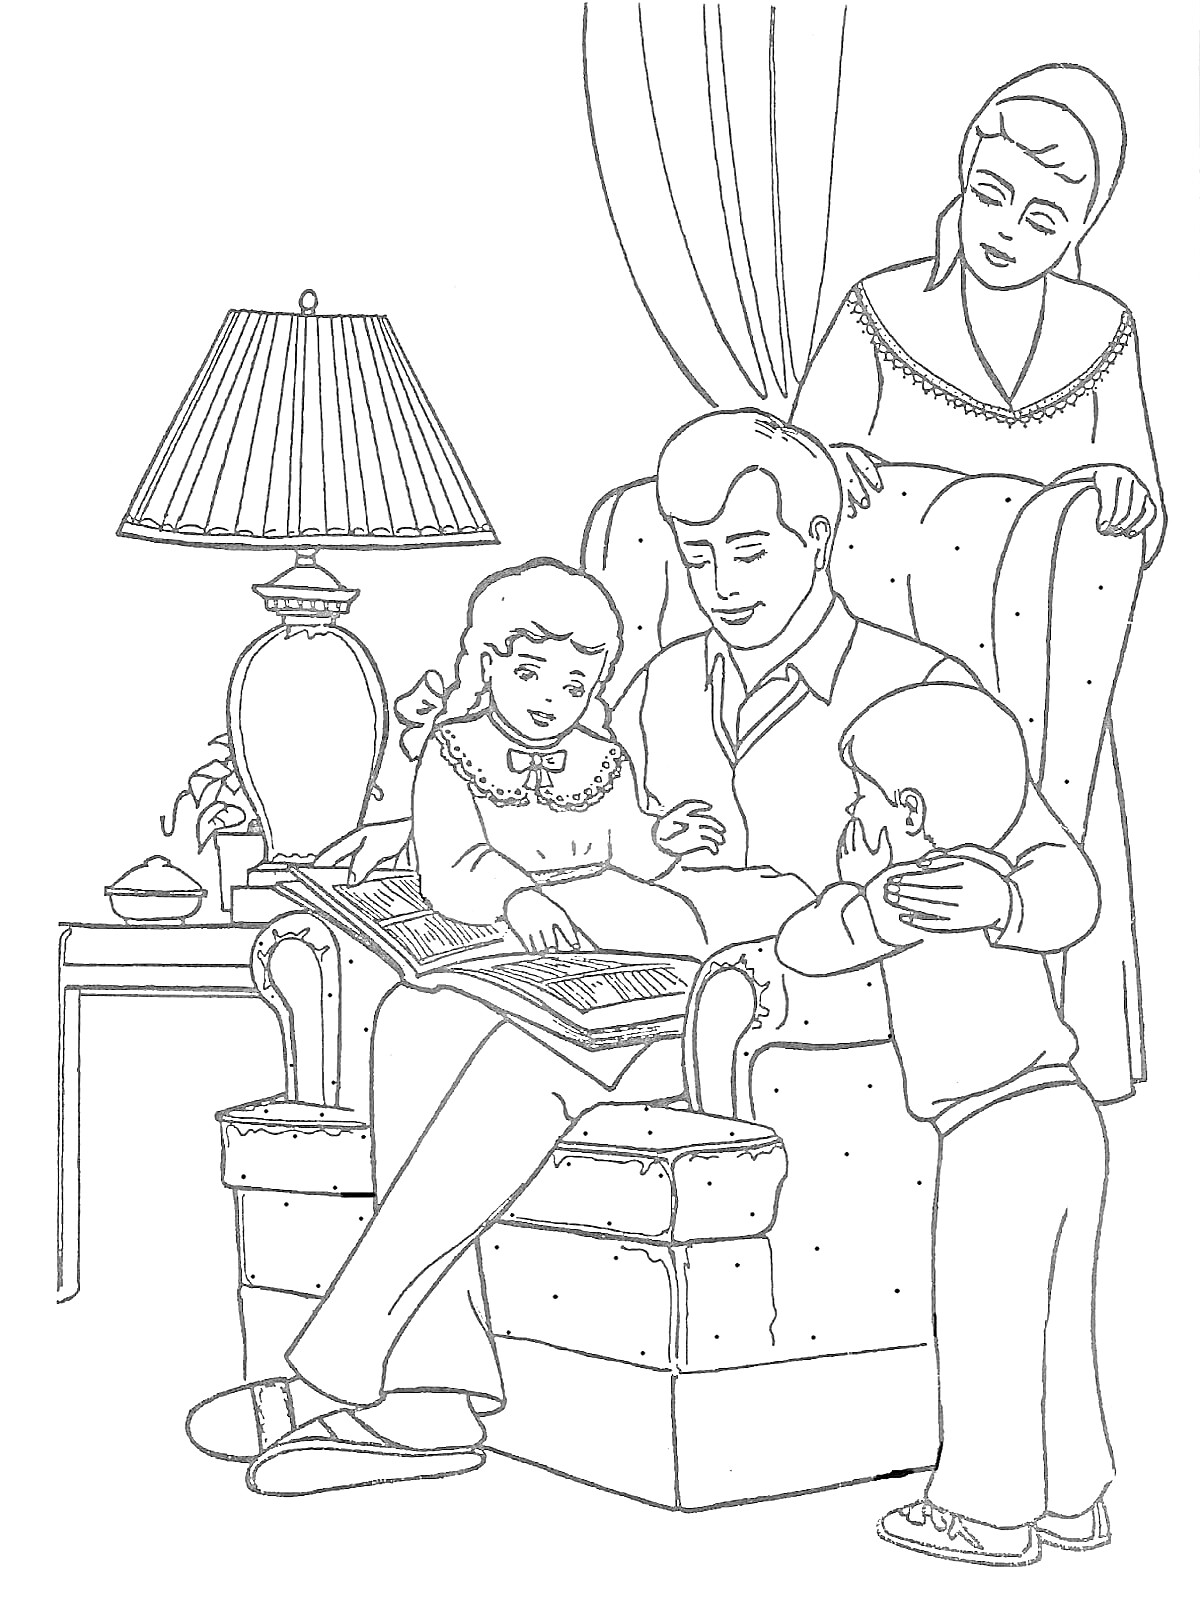 Семья, рассматривающая альбом. Папа сидит в кресле с дочерью на коленях, рядом сын и мама.